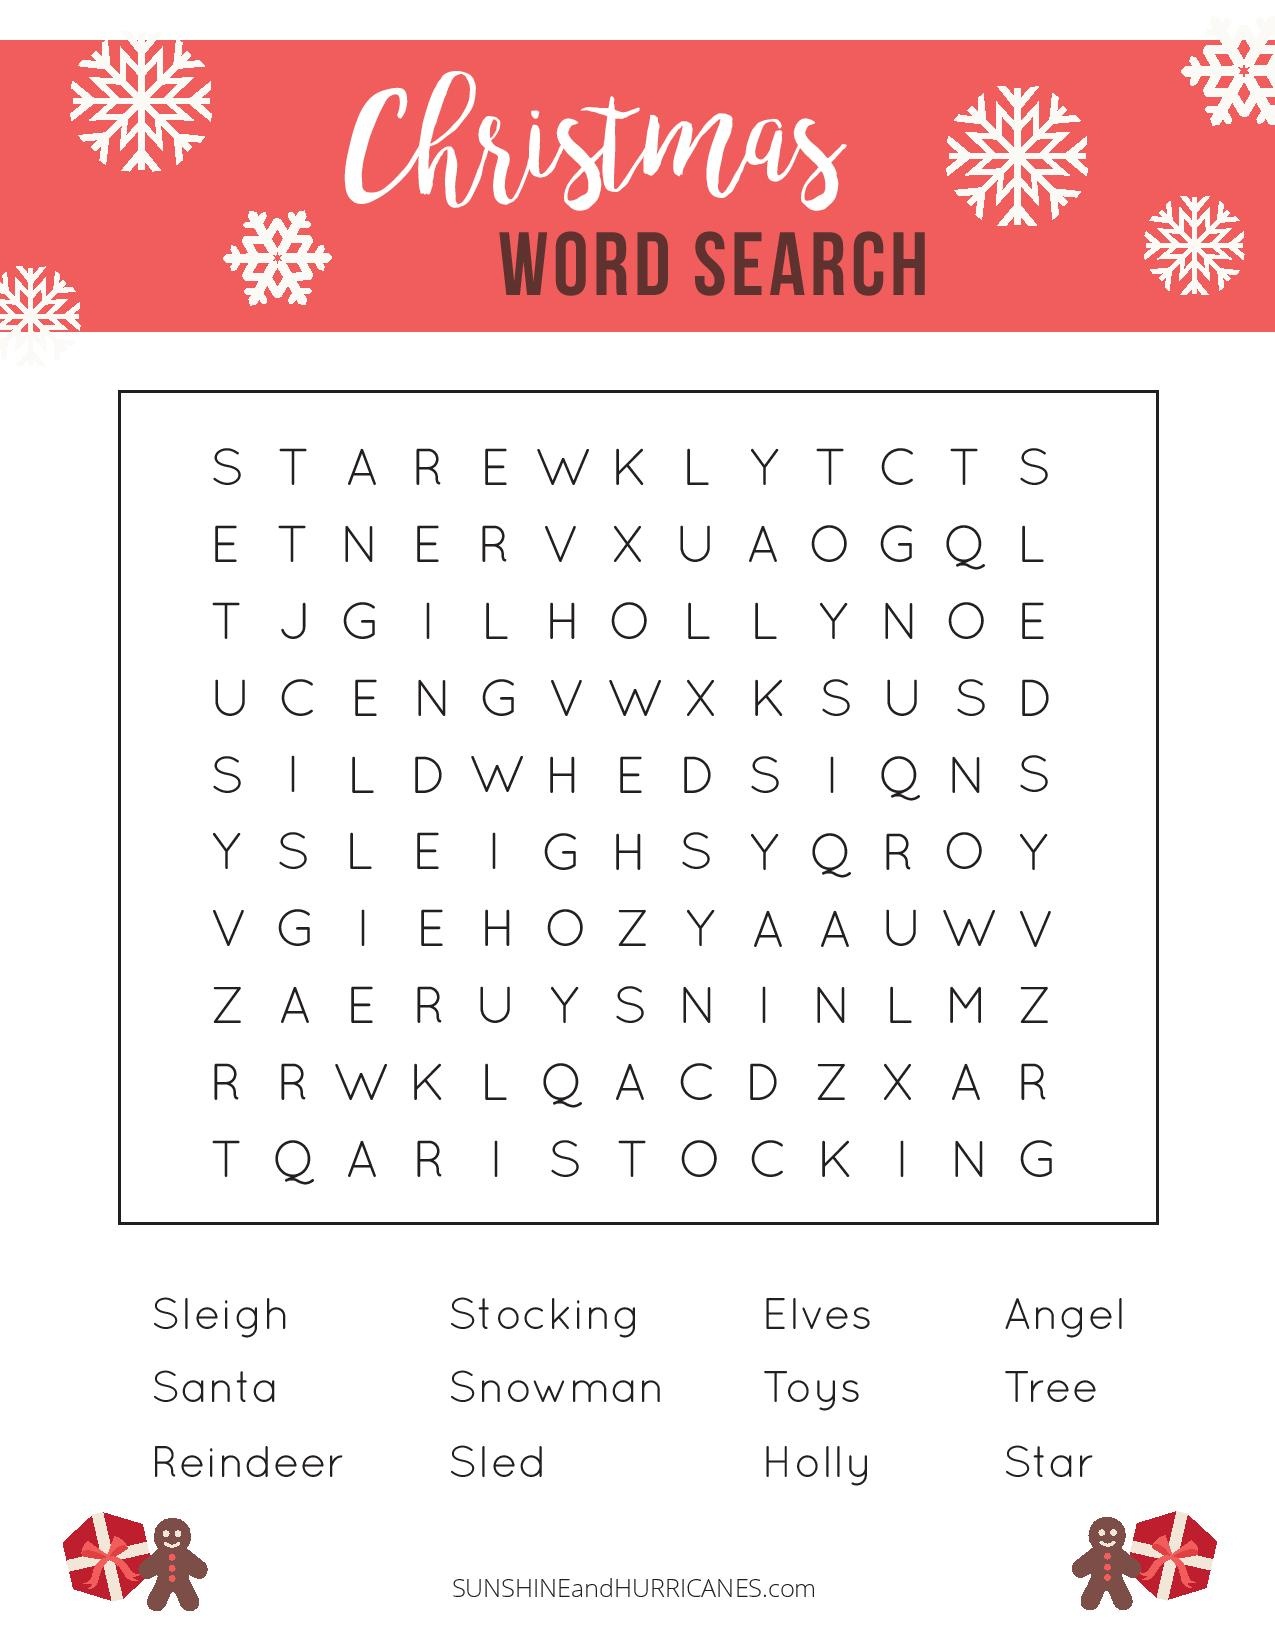 Printable Christmas Word Search - A Fun Holiday Activity For Kids - Free Printable Christmas Word Search